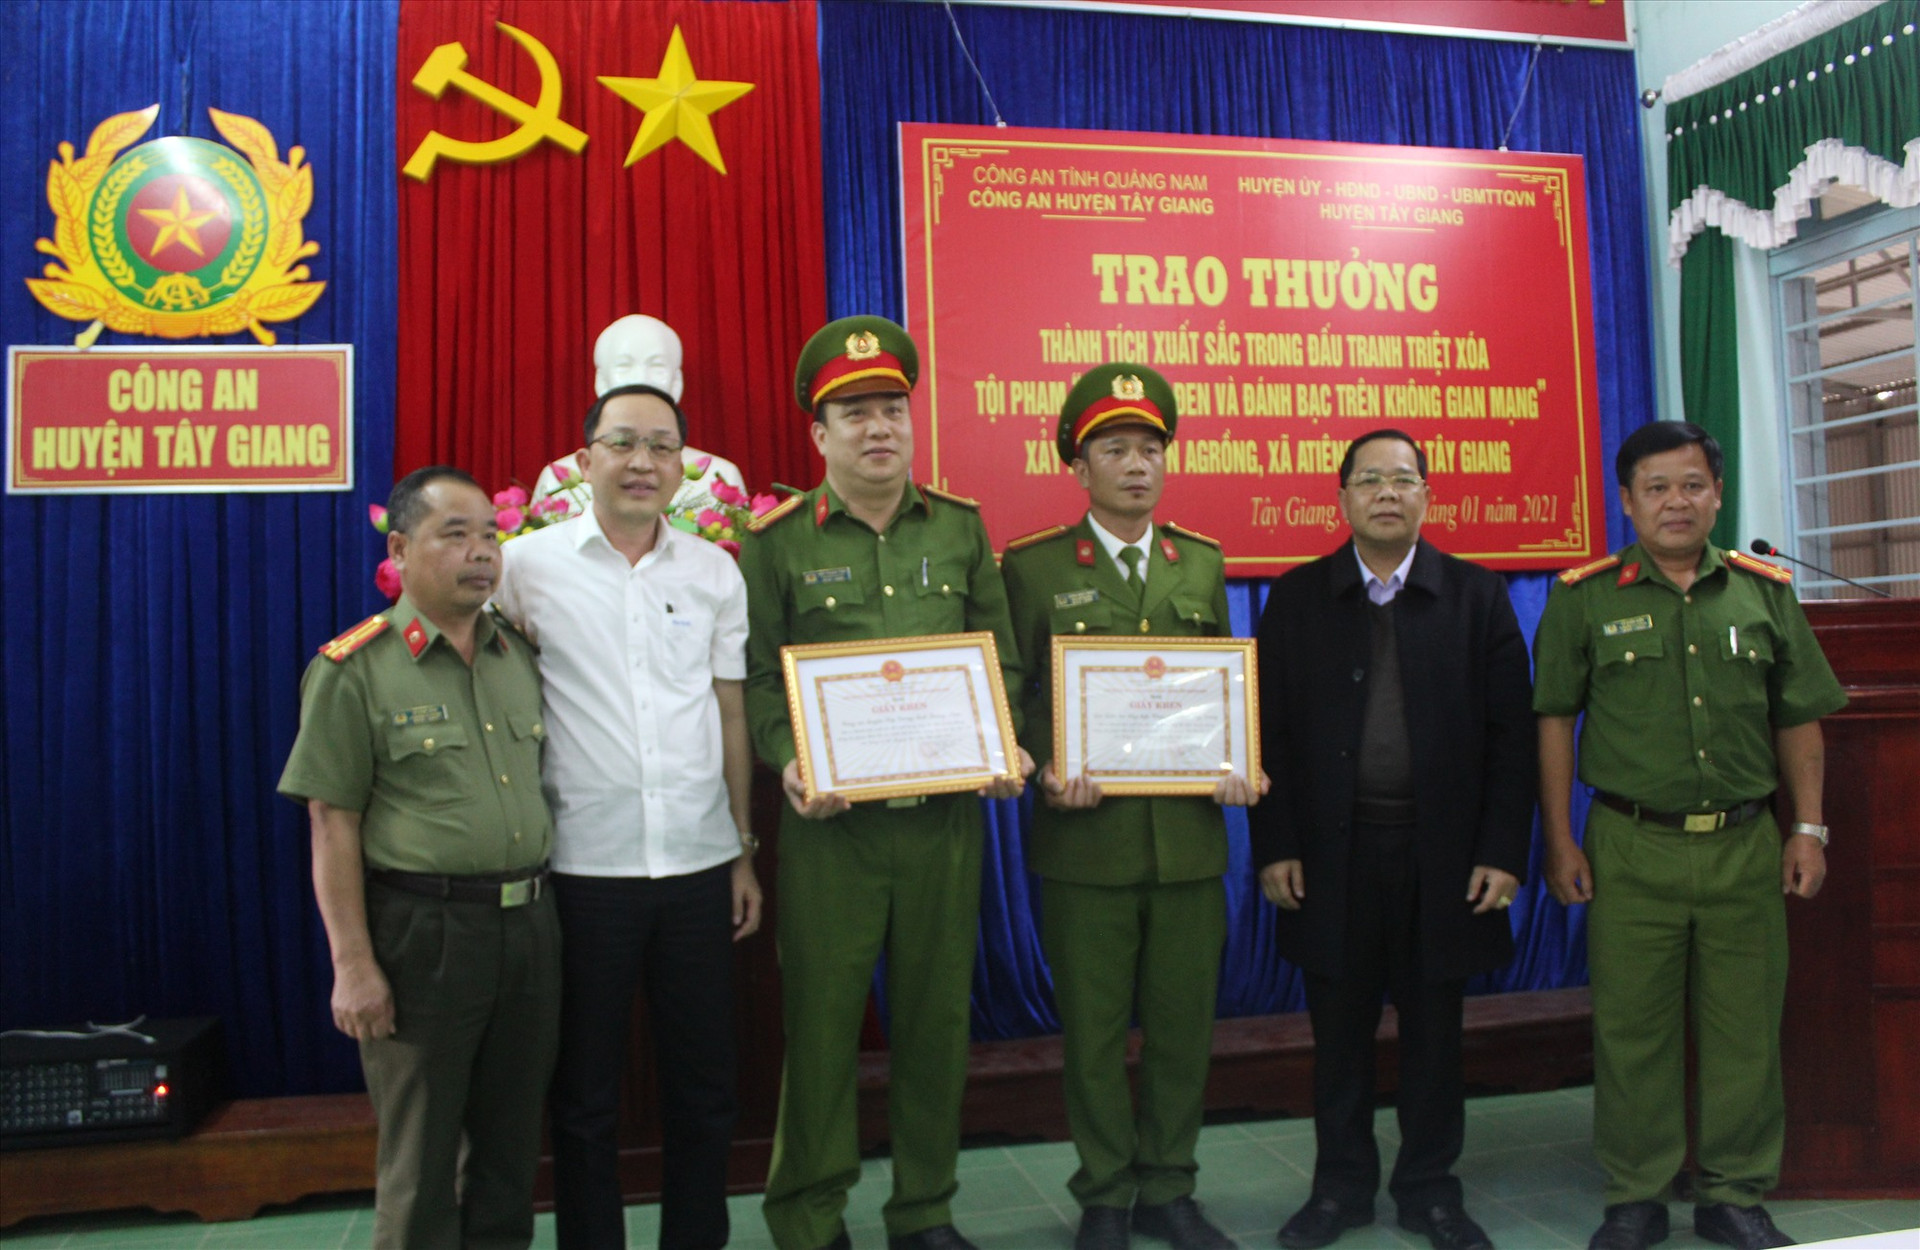 UBND huyện Tây Giang đã khen thưởng đột cho Đội Điều tra tổng hợp và Công an huyện